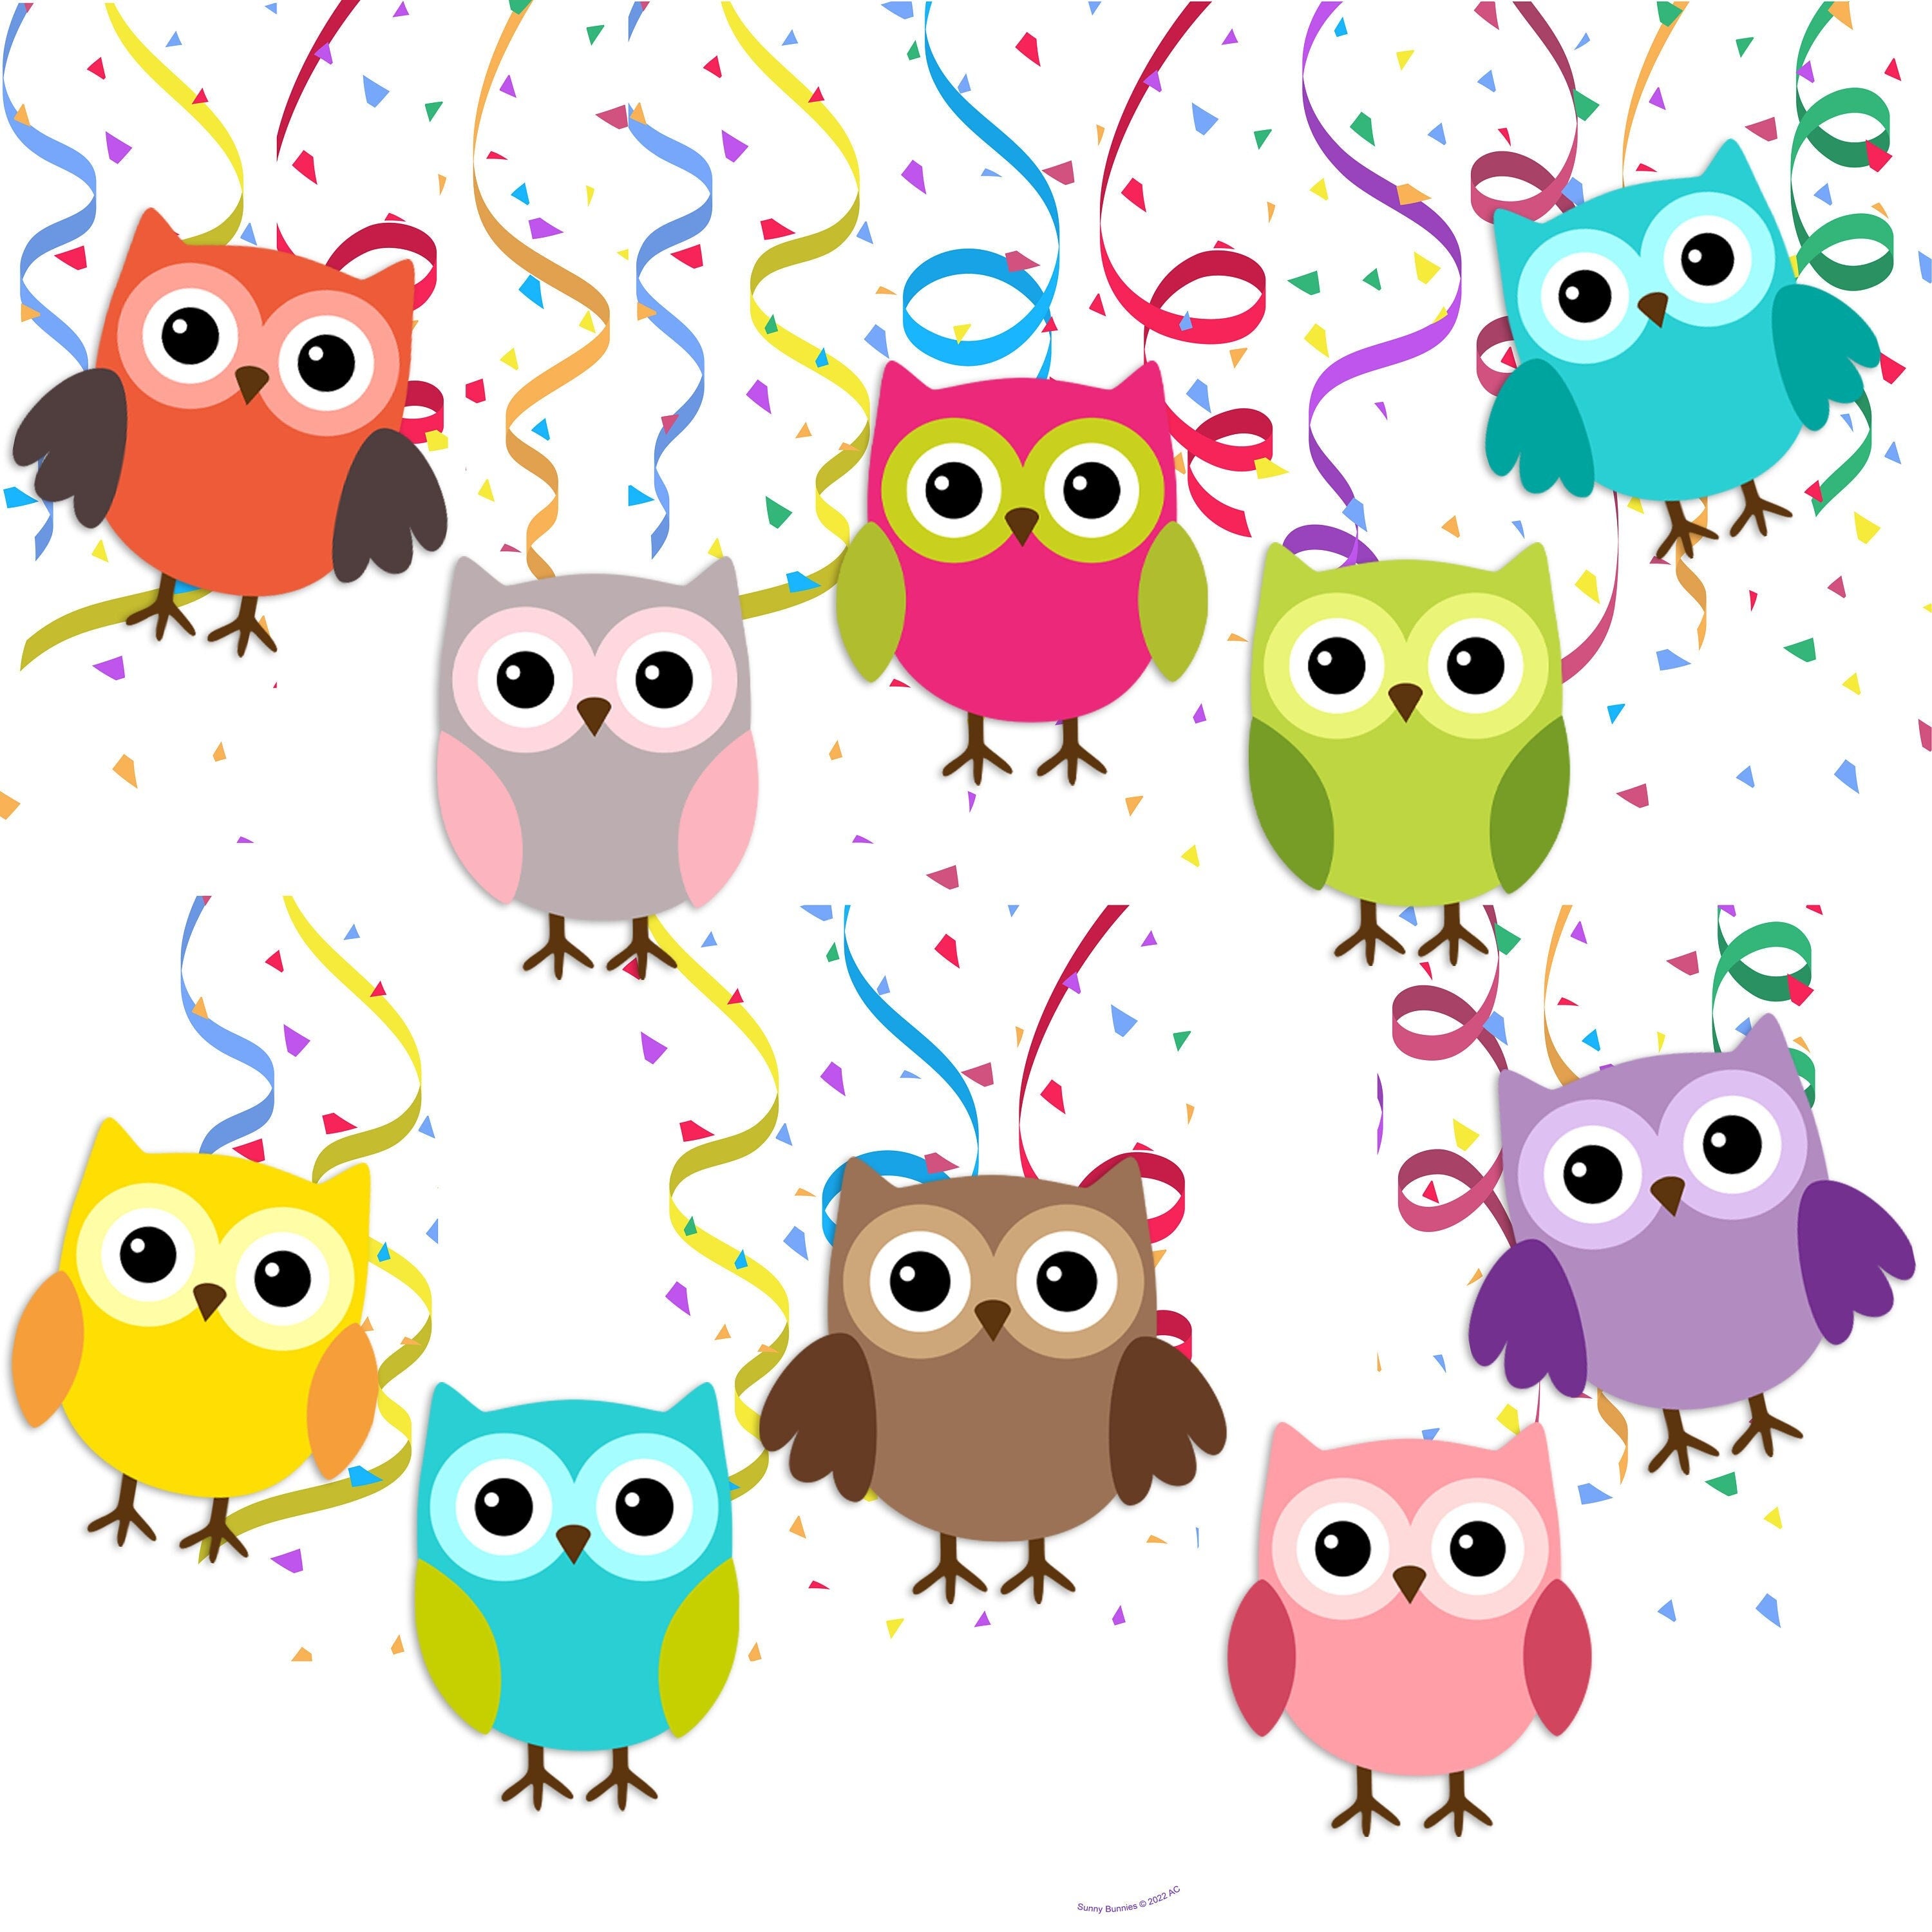 Enchanted Woodland Owl Swirls - 10pcs Whimsical Party Decorations Set